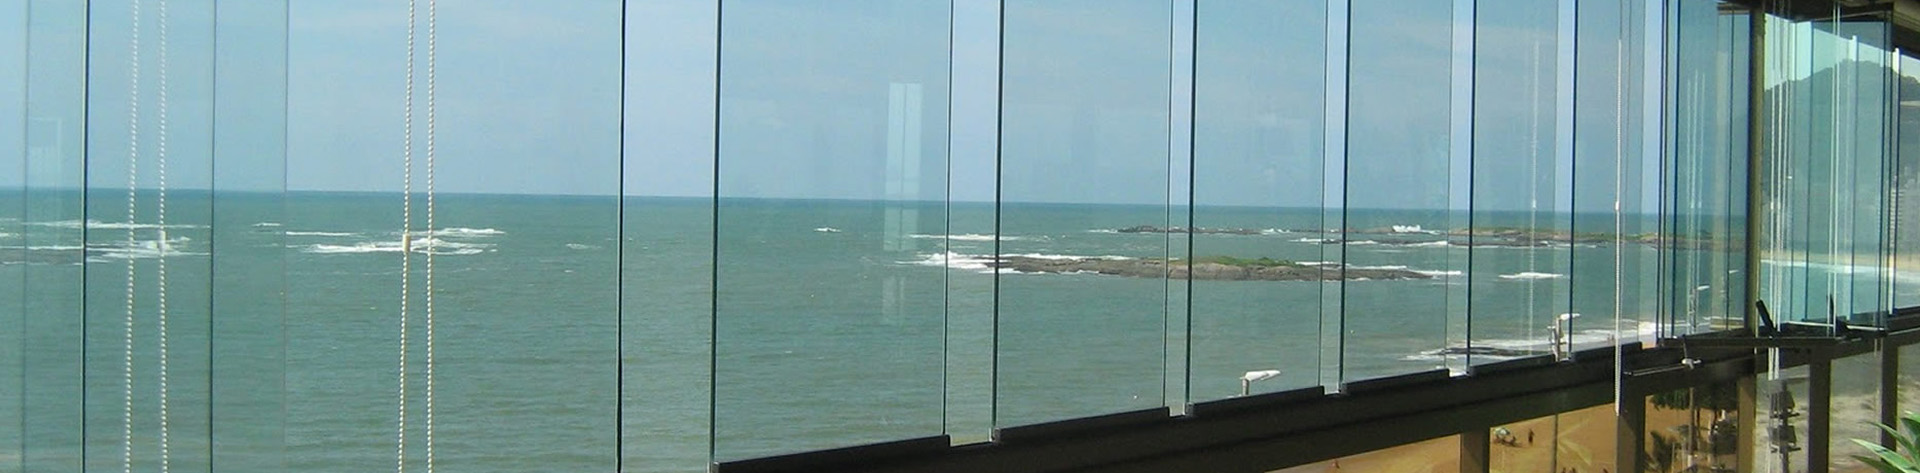 Mar vidros Vidraçaria - Vidros Temperados em Santos | São Vicente | Praia Grande | São Vicente | Cubatão | Baixada Santista